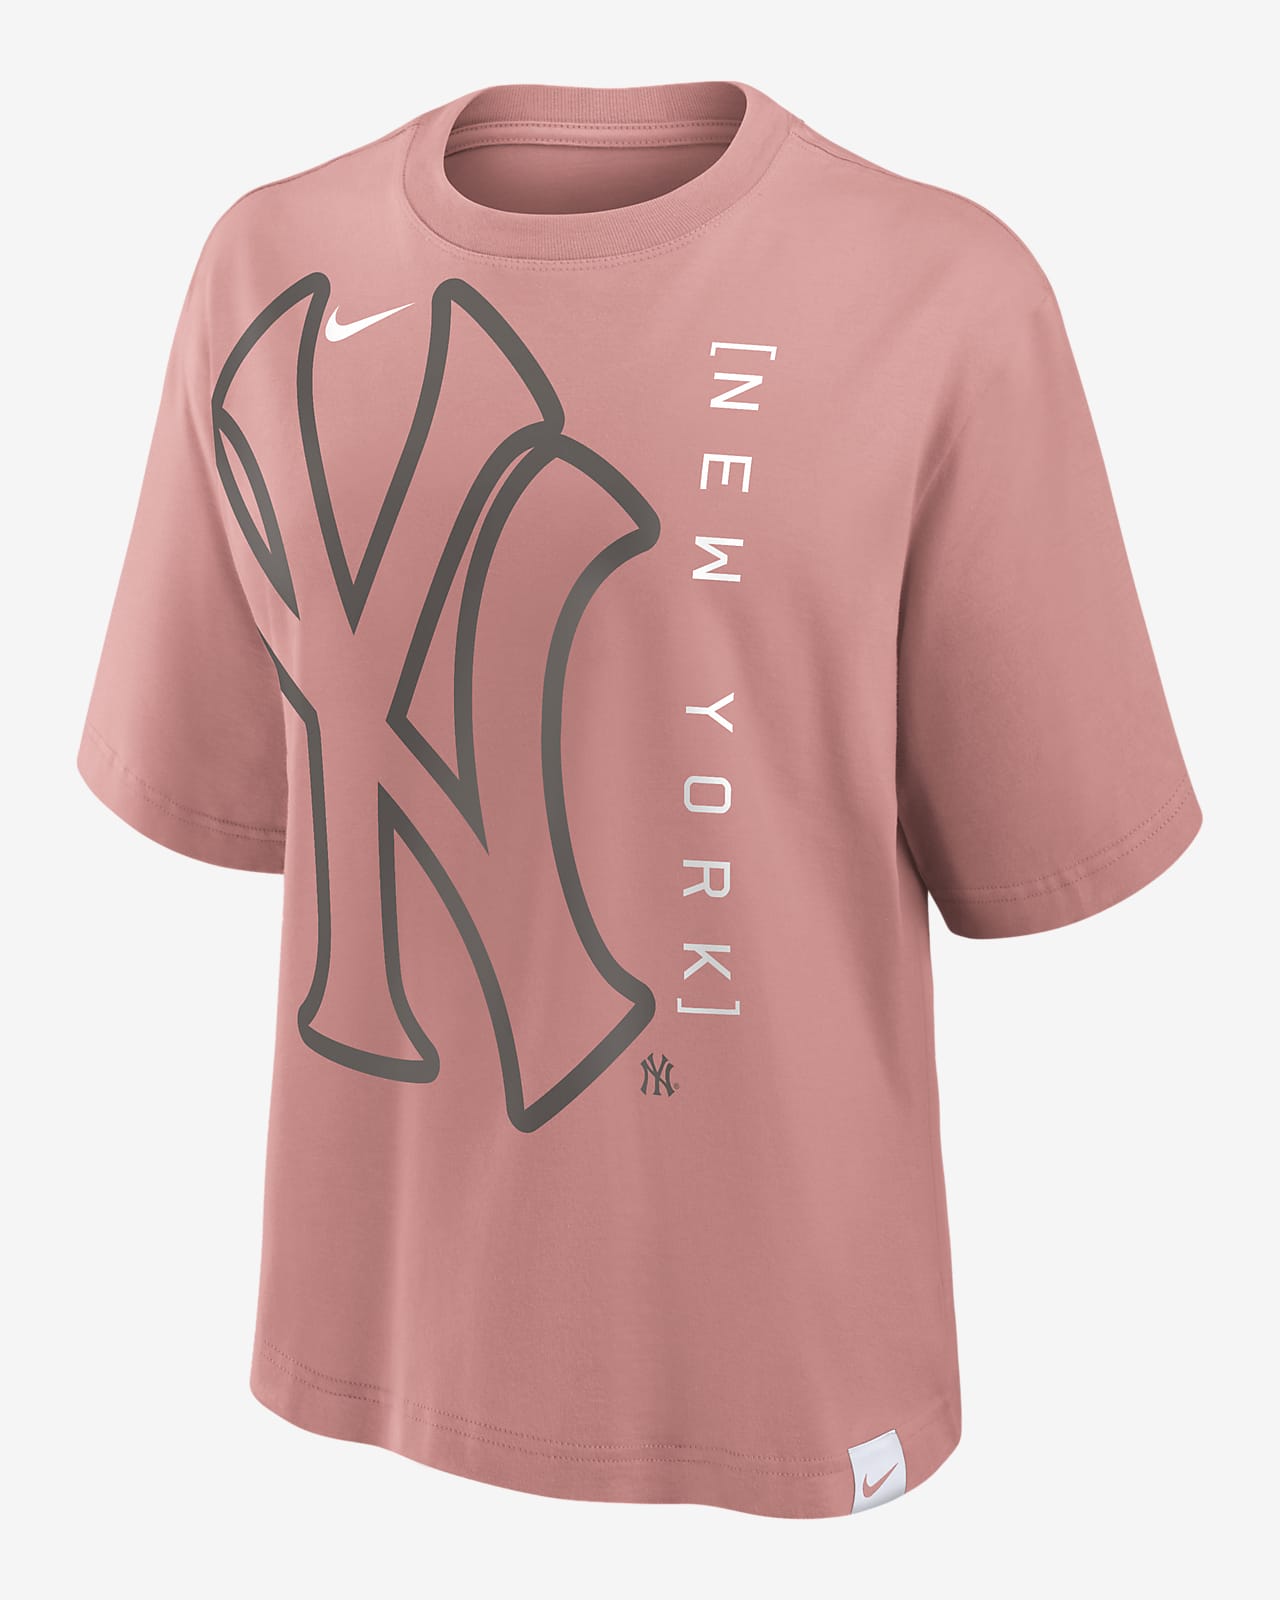 New York Yankees Statement Boxy Women's Nike MLB T-Shirt